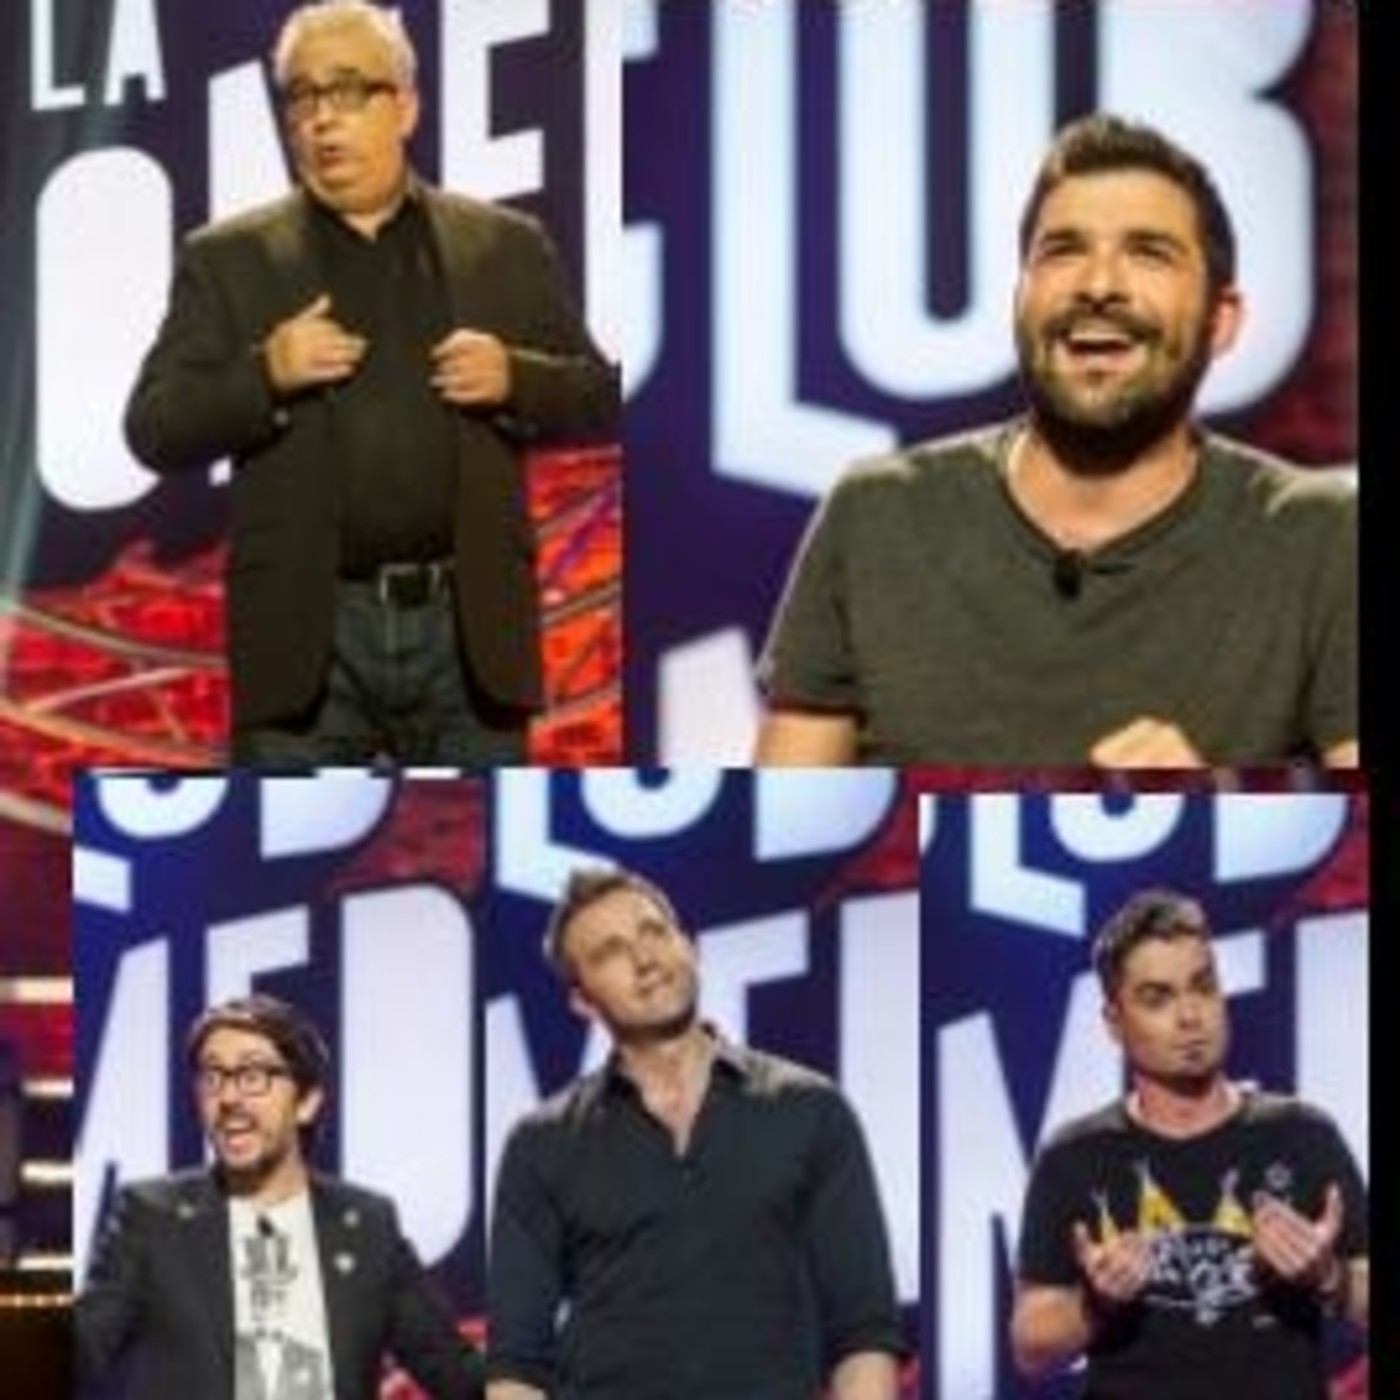 El Club de la Comedia T6x05 - Leo Harlem, Alex Clavero, Fernando Gil, Nacho García y Flipy